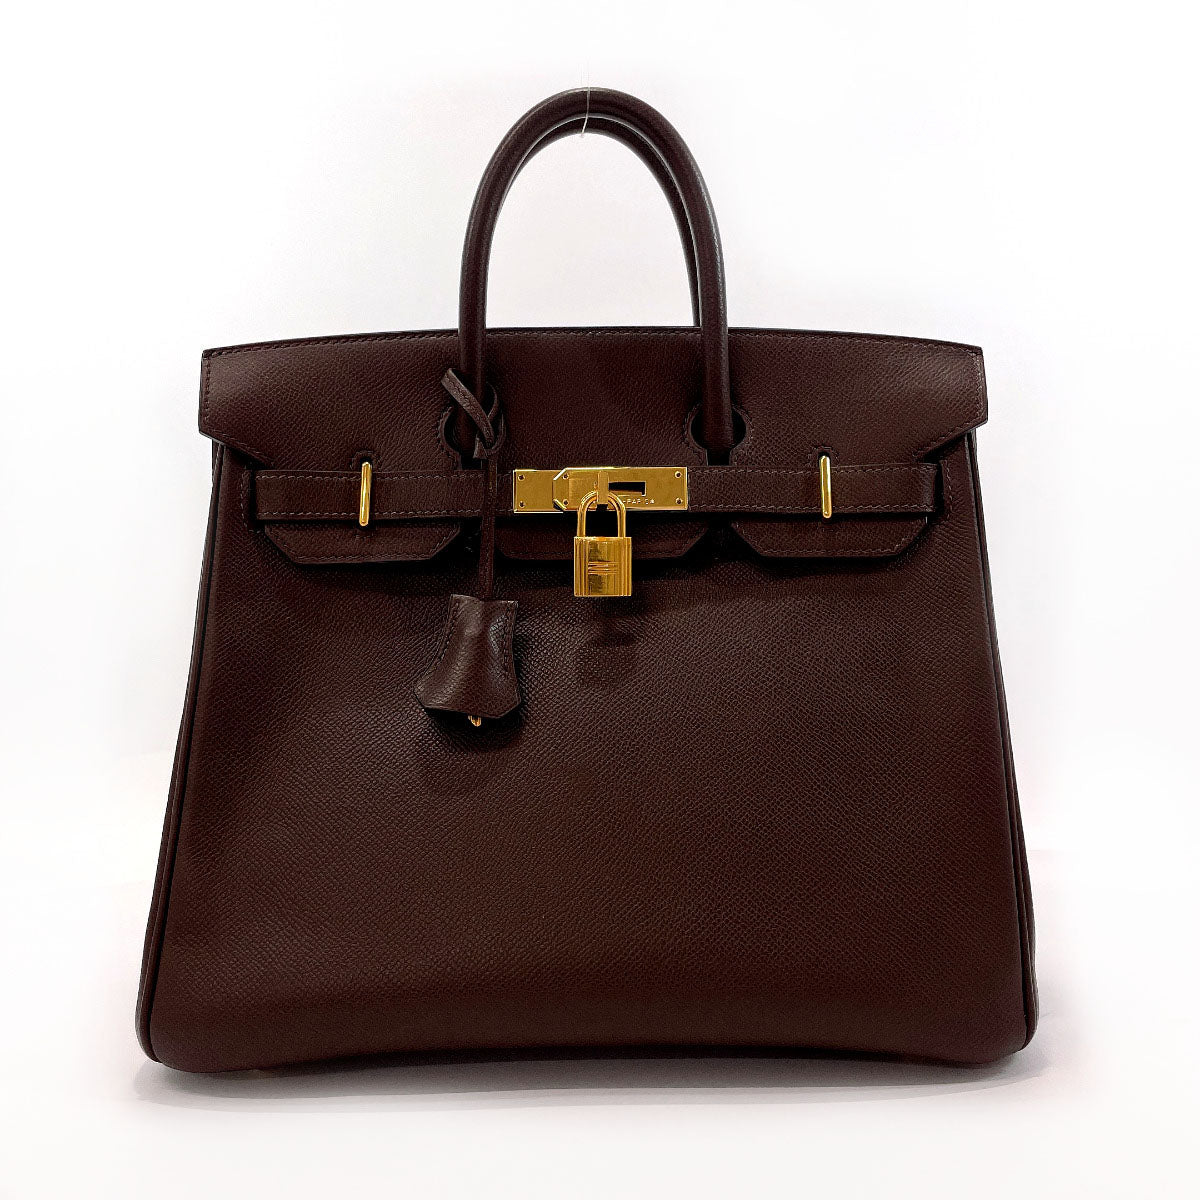 Haut à courroies leather 48h bag Hermès Blue in Leather - 24957724